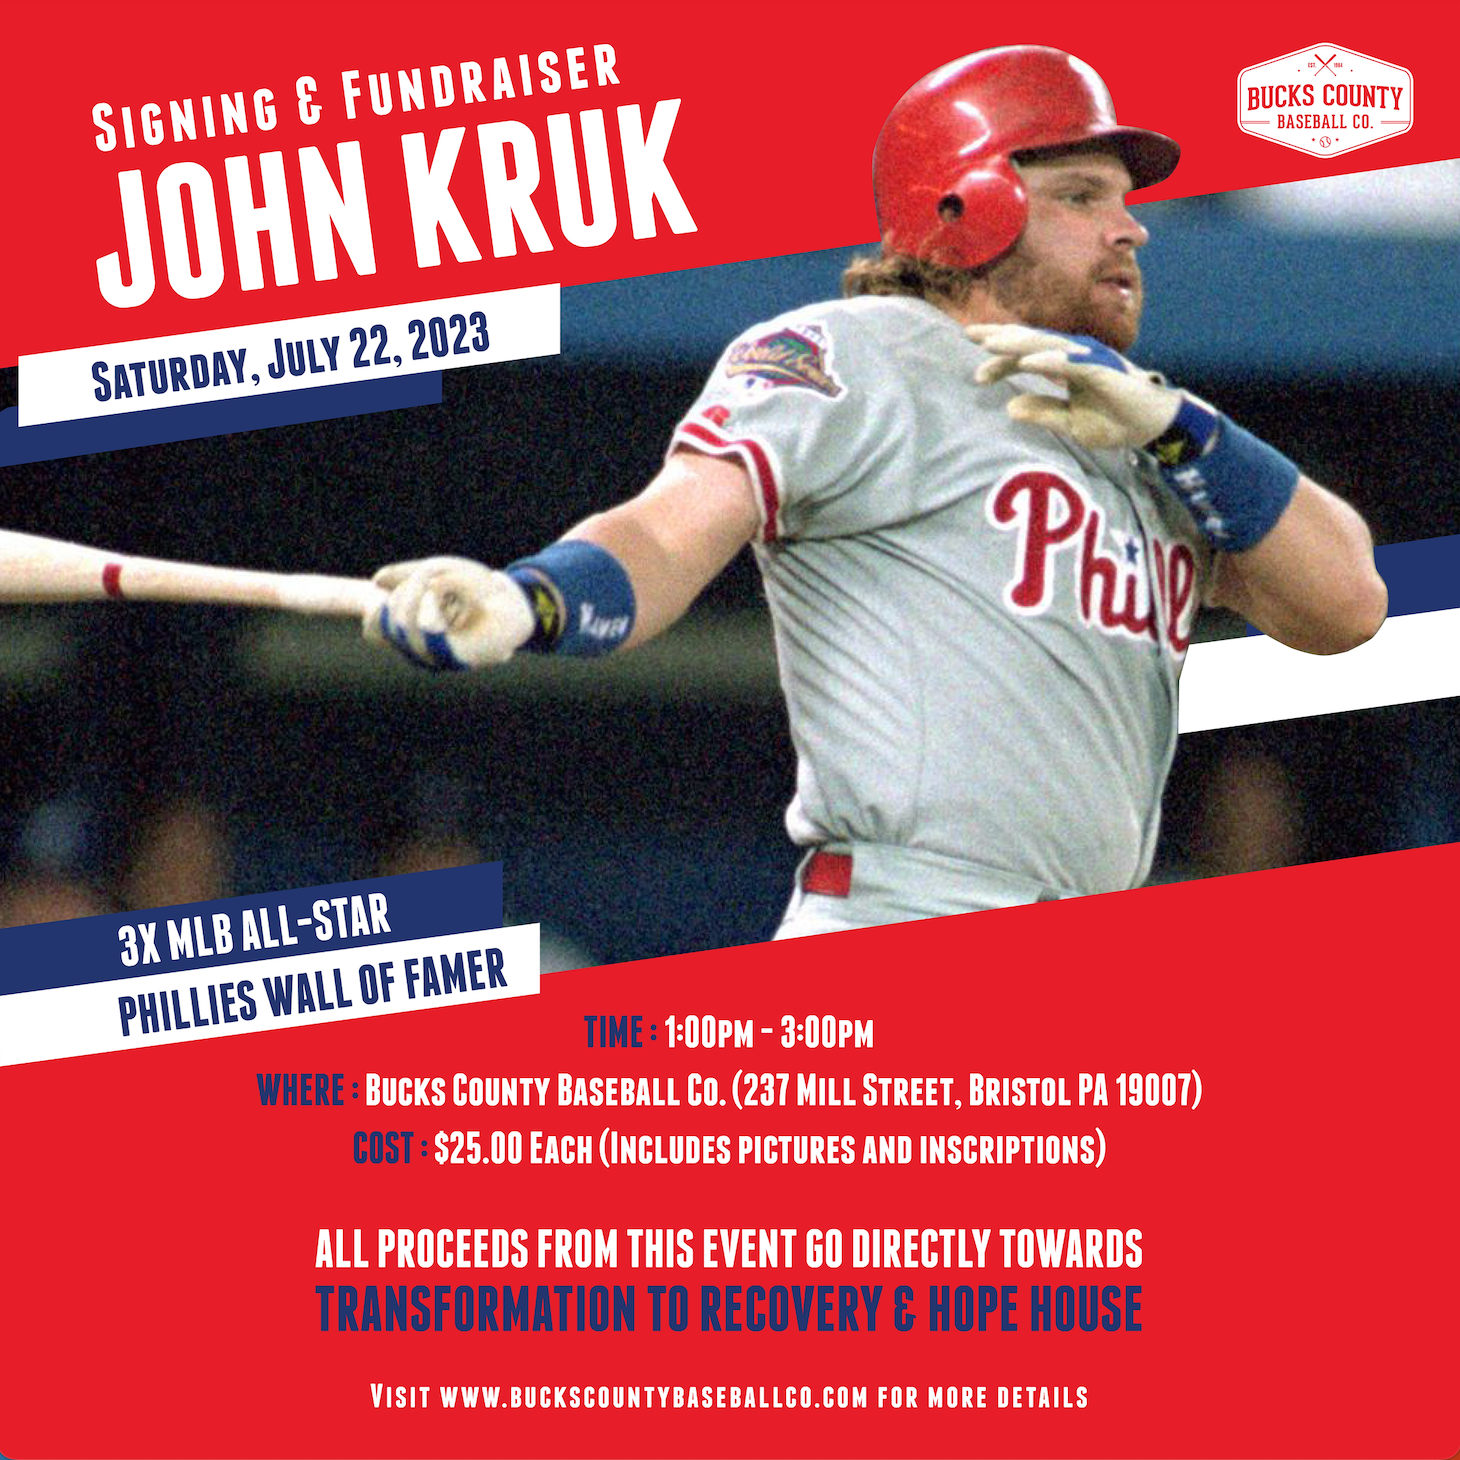 John Kruk 1993 Philadelphia Phillies World Series Home & Road